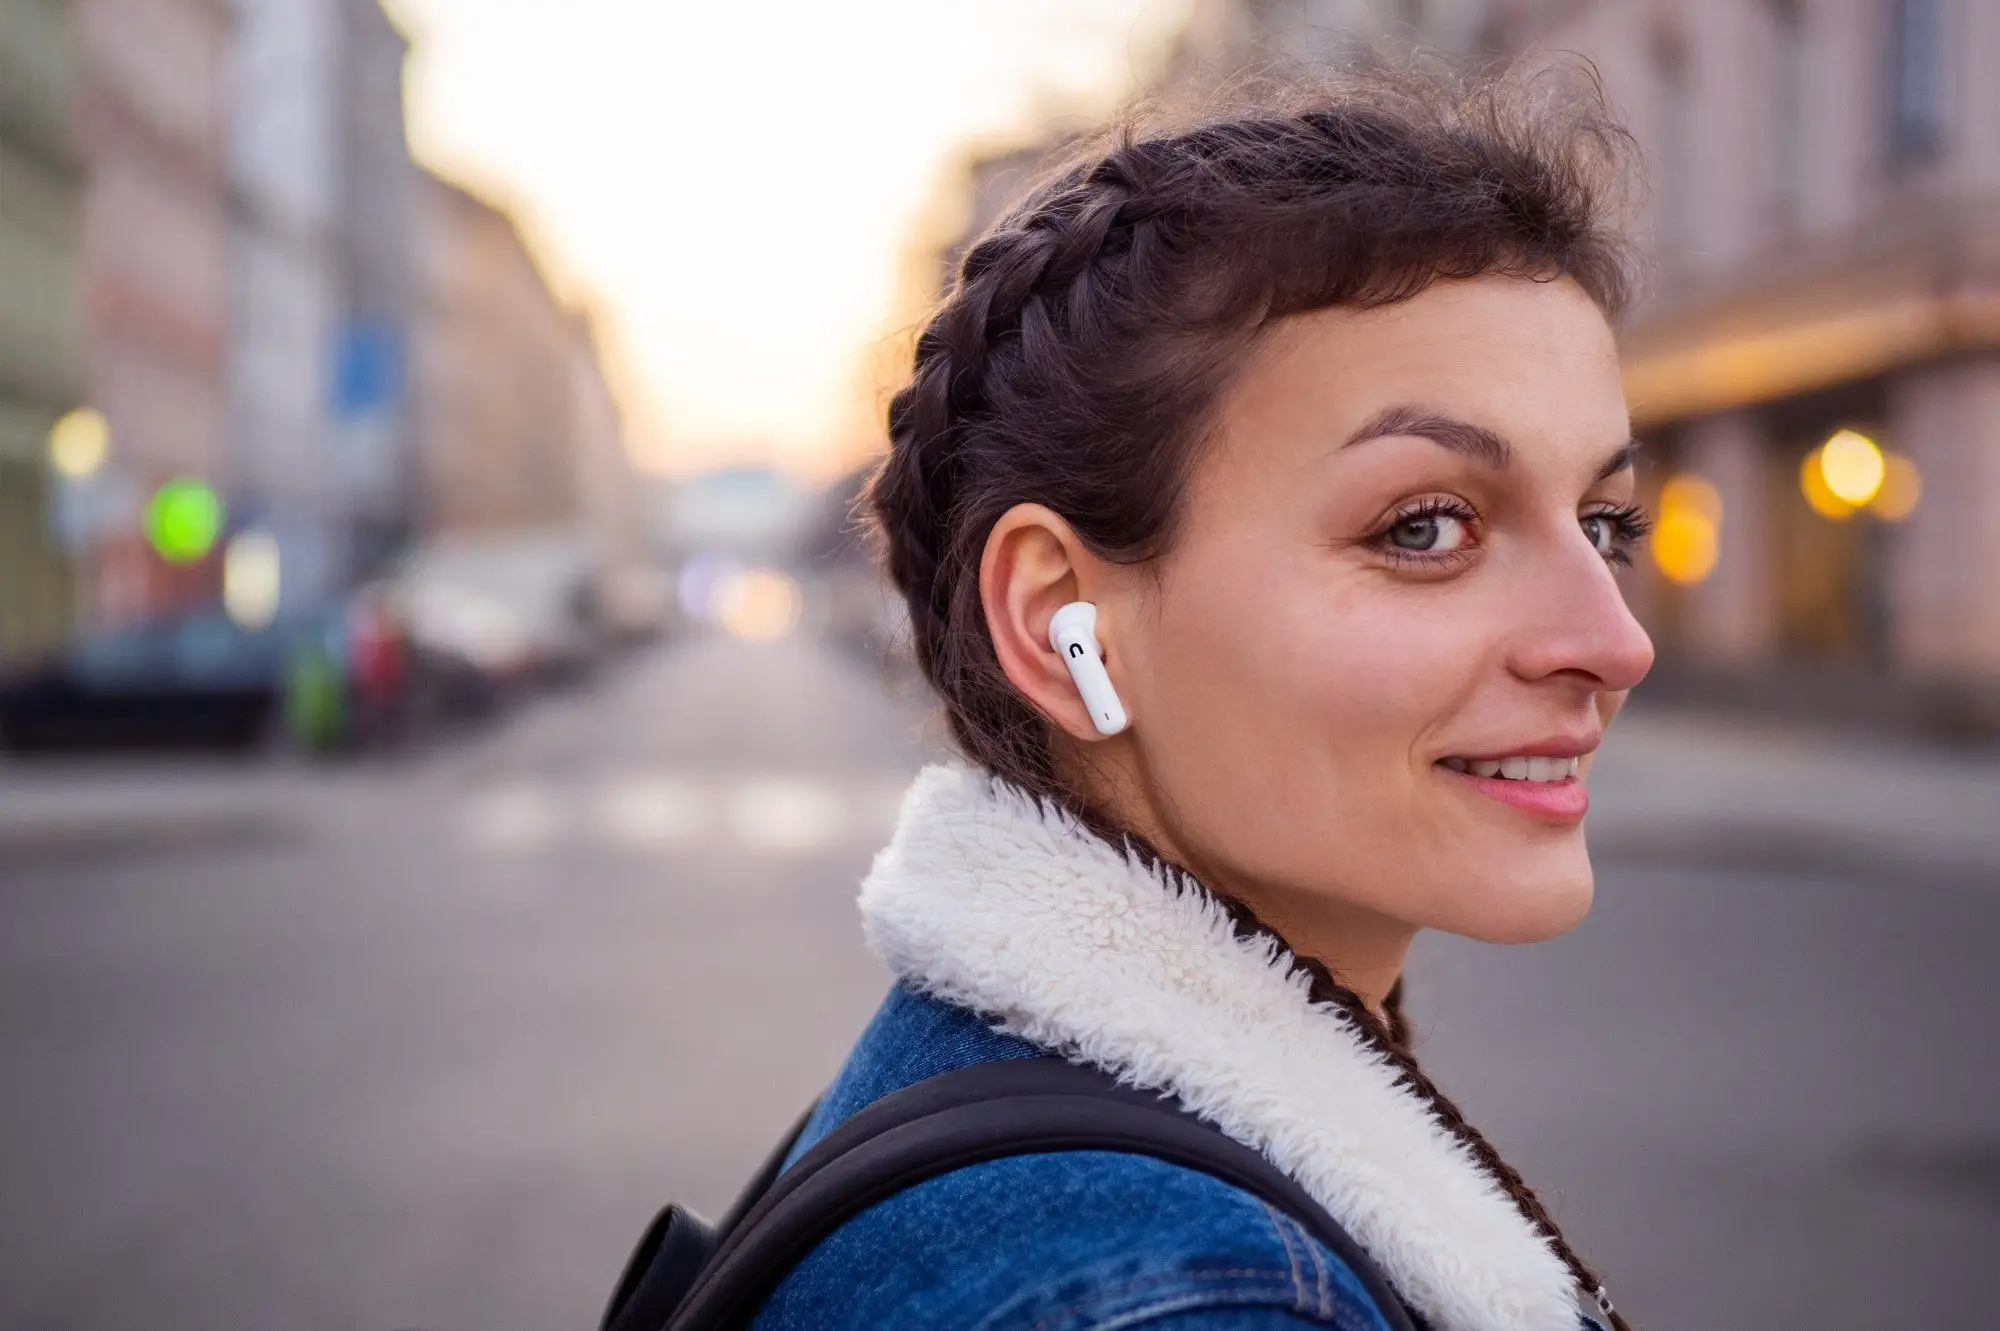 Bezdrátová In-Ear sluchátka Niceboy Pins 3 s podporou Bluetooth 5.1 jsou navržené tak, aby vás nijak neomezovaly při pohybu či při jiných aktivitách.